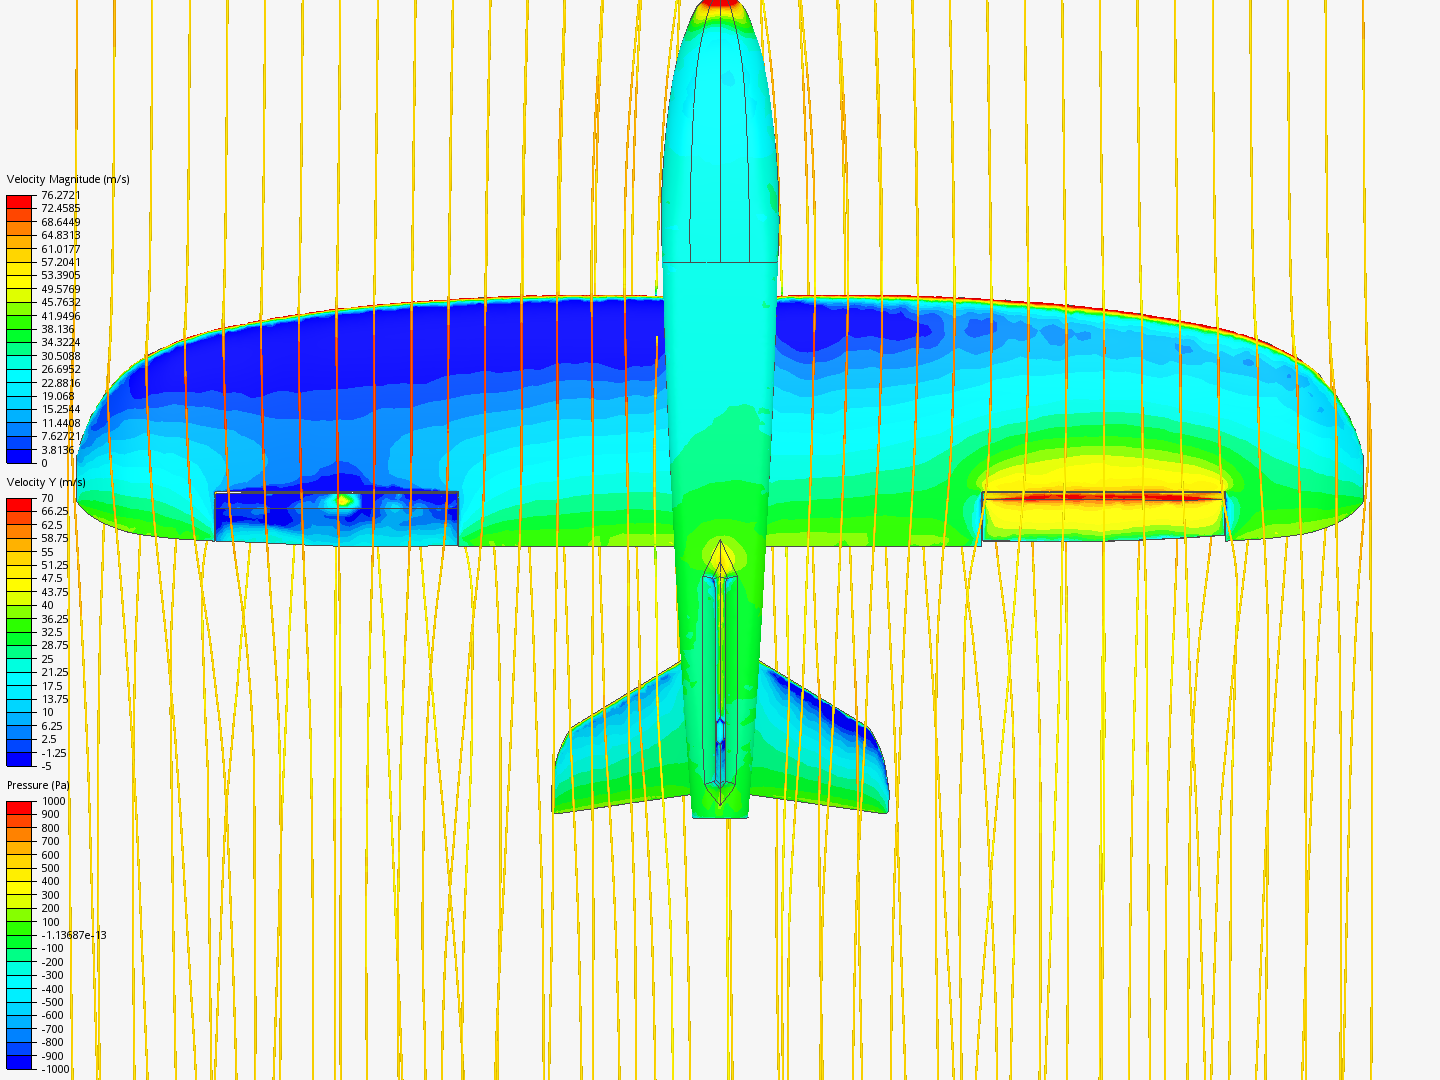 simulasi sayap 0012 0' dan aileron image